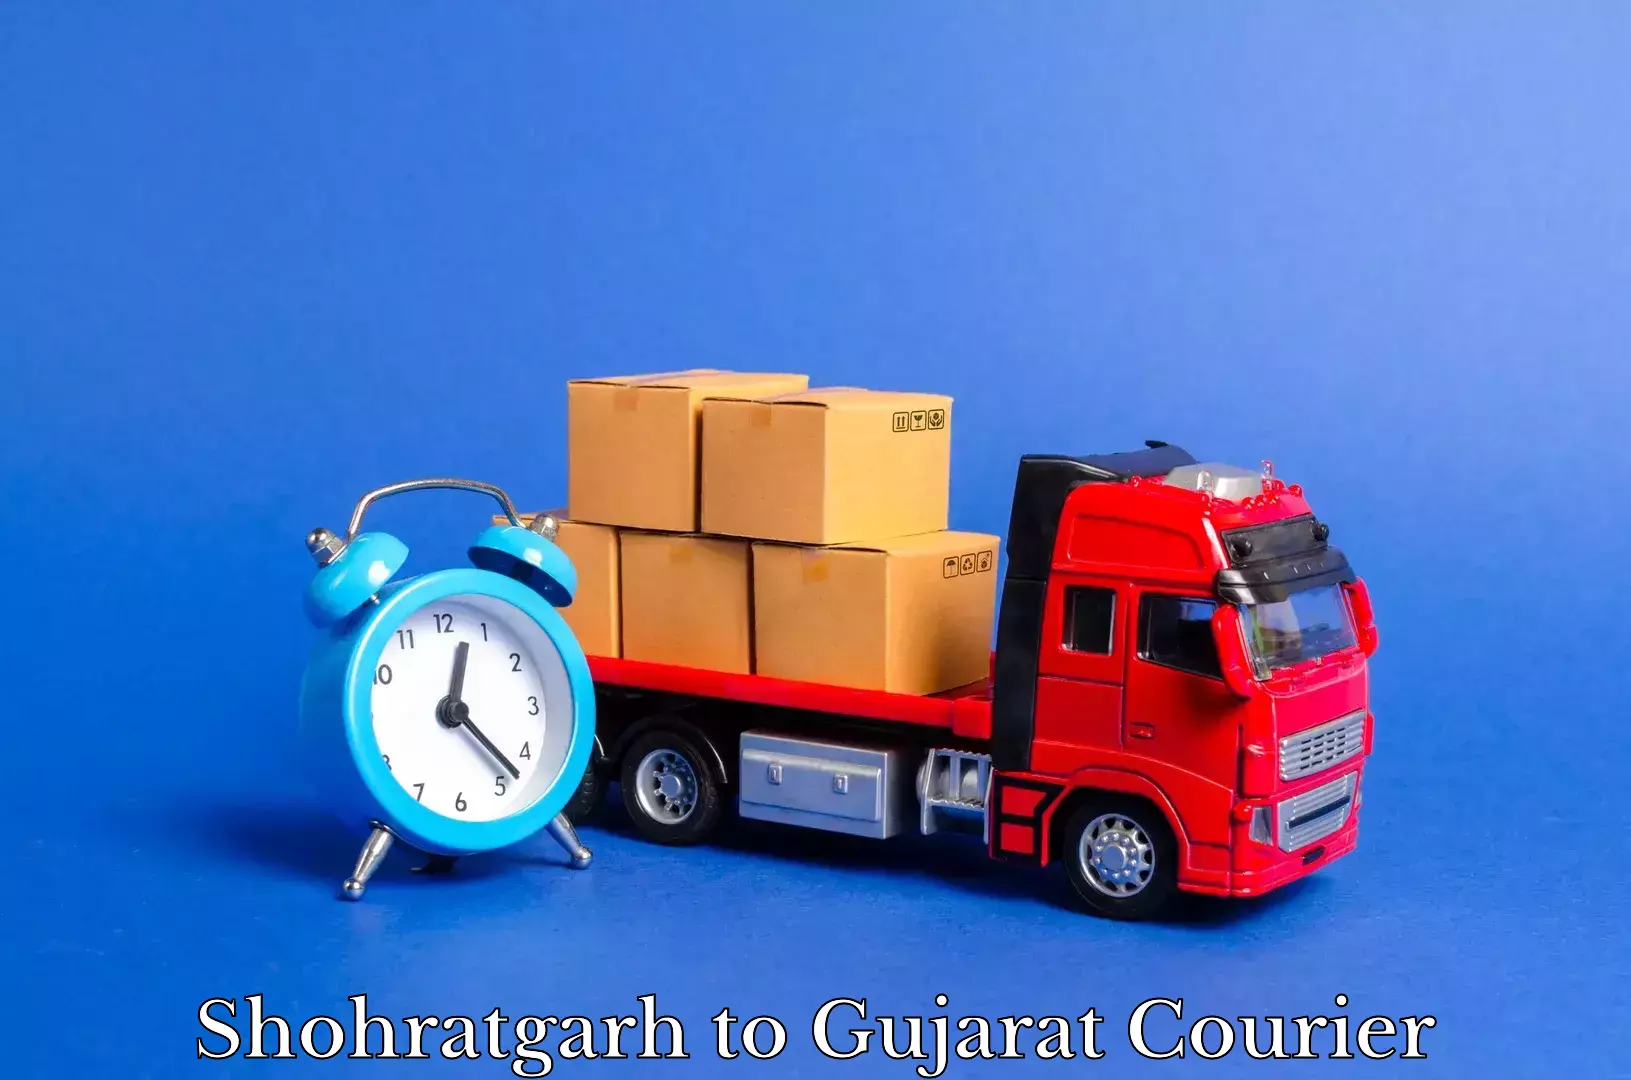 Furniture moving assistance Shohratgarh to Dhrol